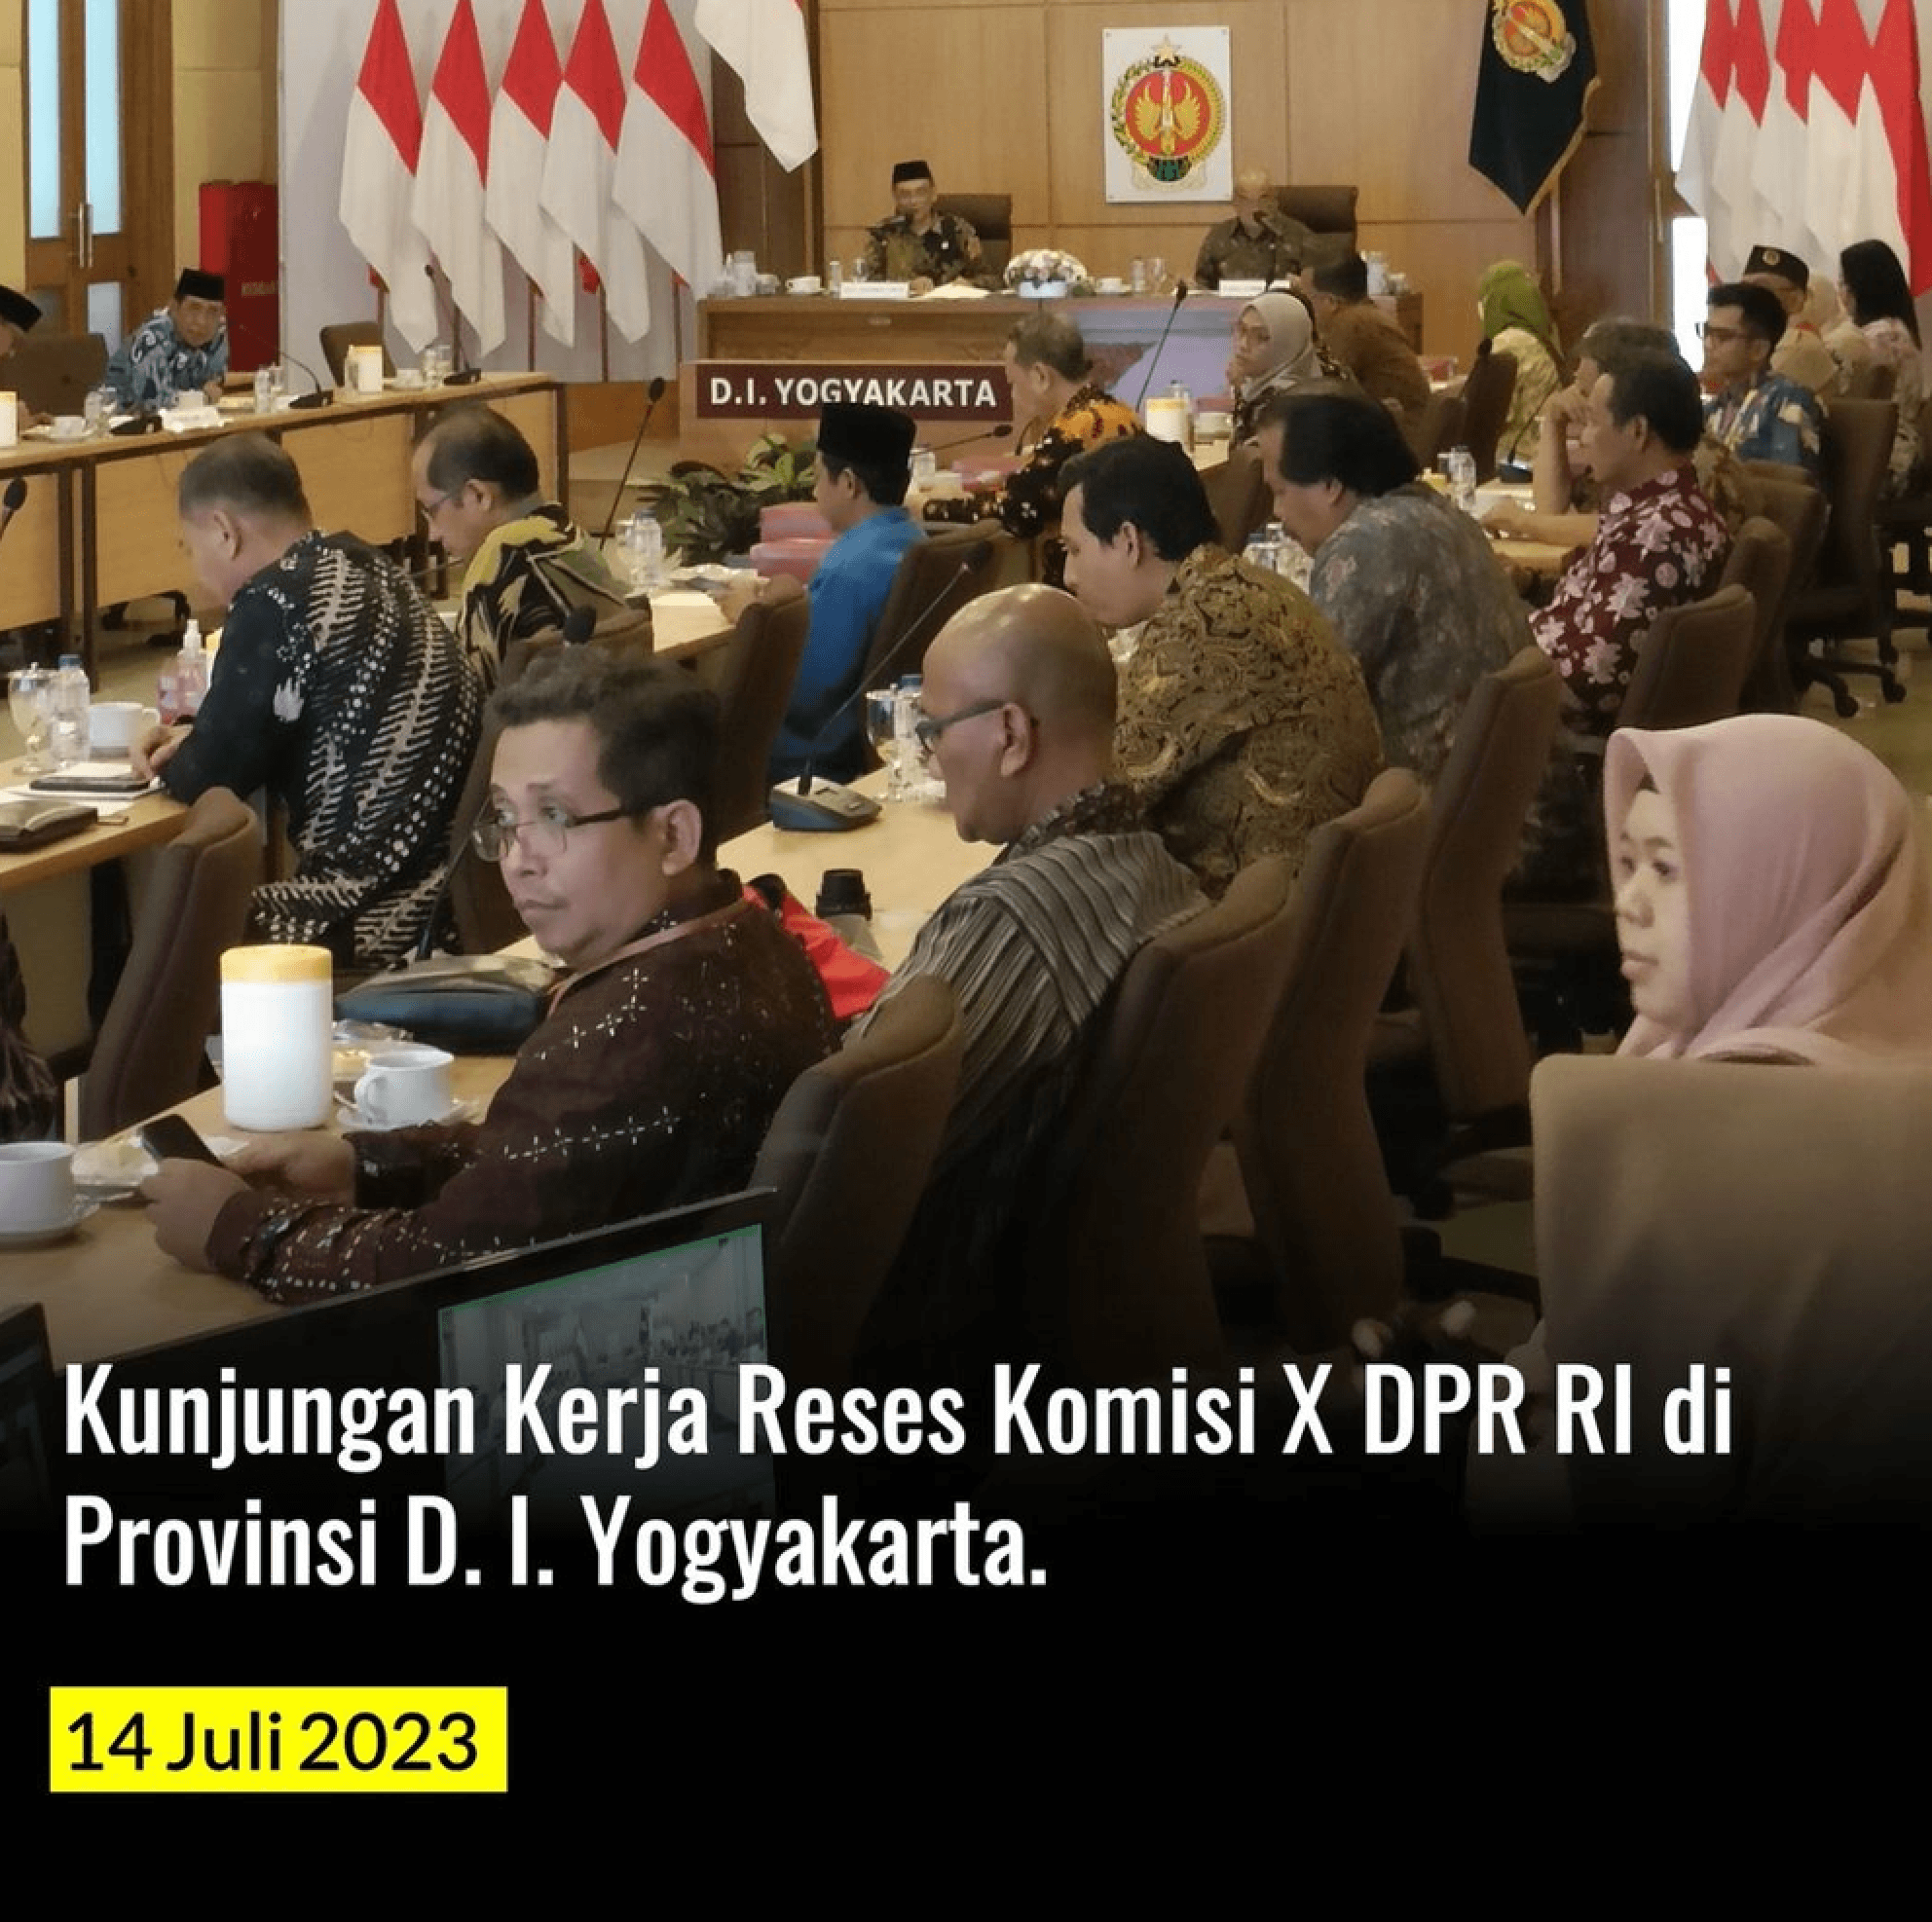 Kunjungan Kerja Reses Komisi X DPR RI Bersama Perpusnas RI di Provinsi D.I. Yogyakarta